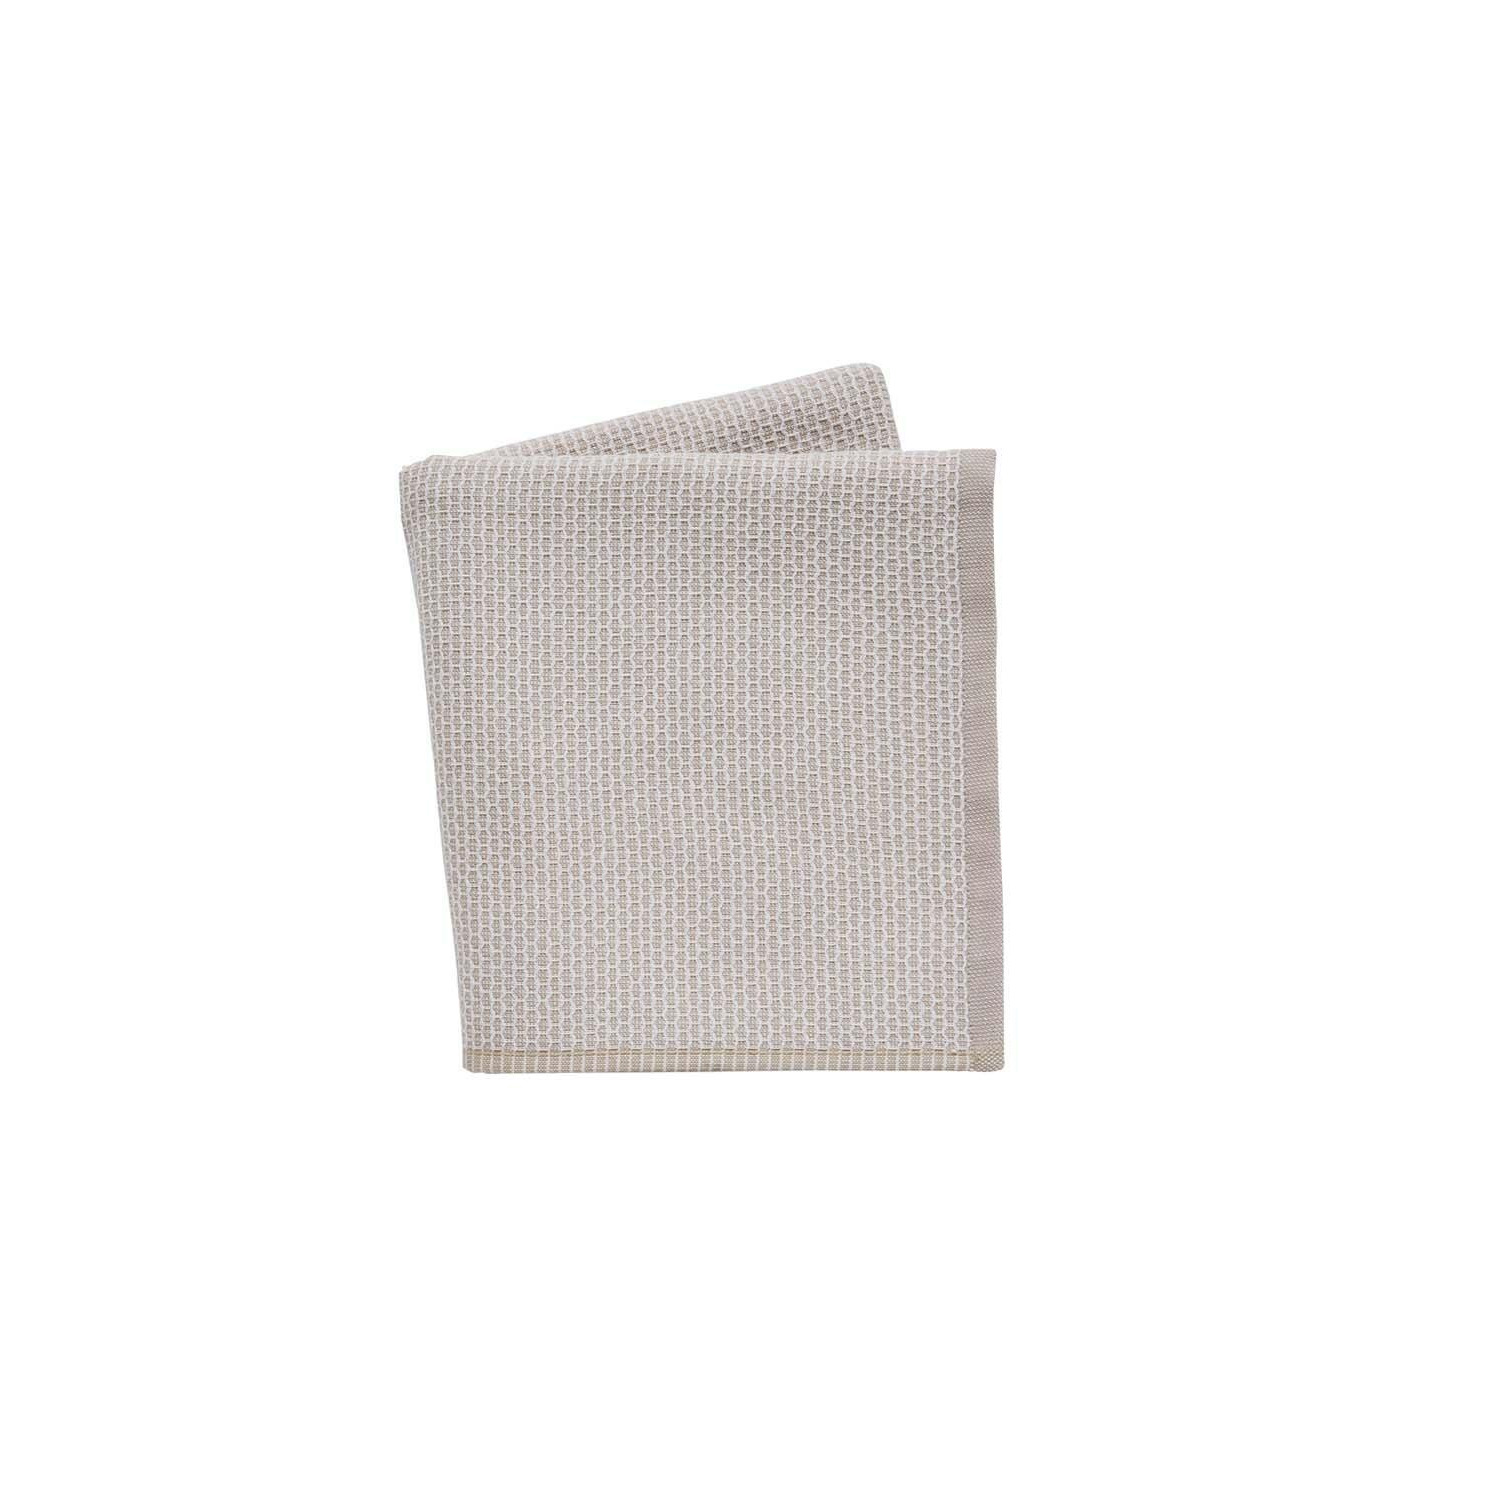 'Ottie' Cotton Towels - image 1